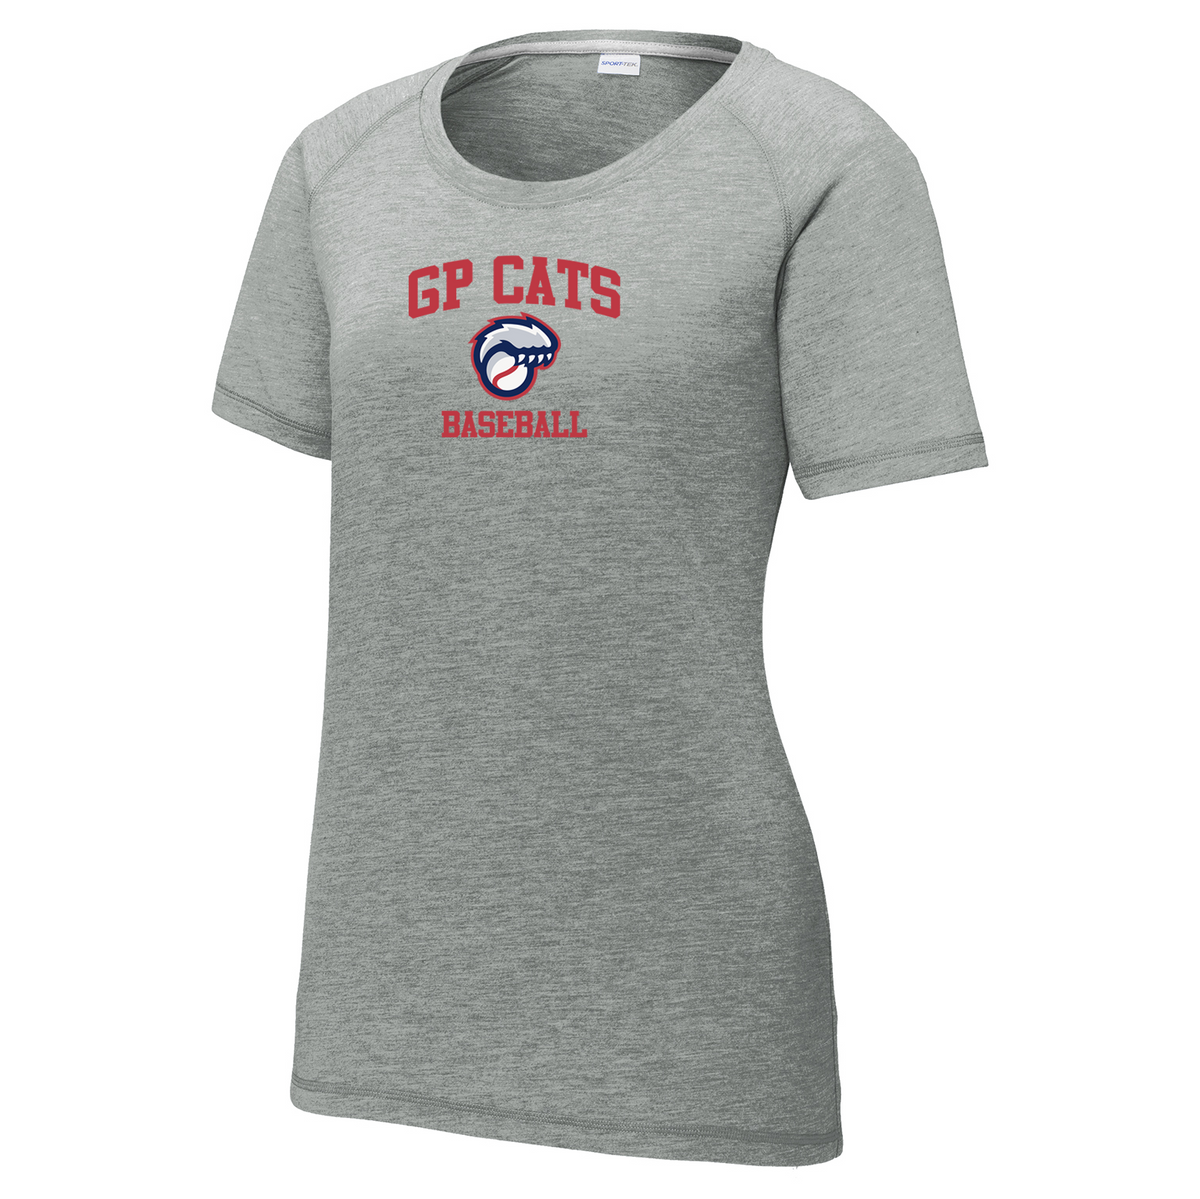 GP Cats Baseball Women's Raglan CottonTouch